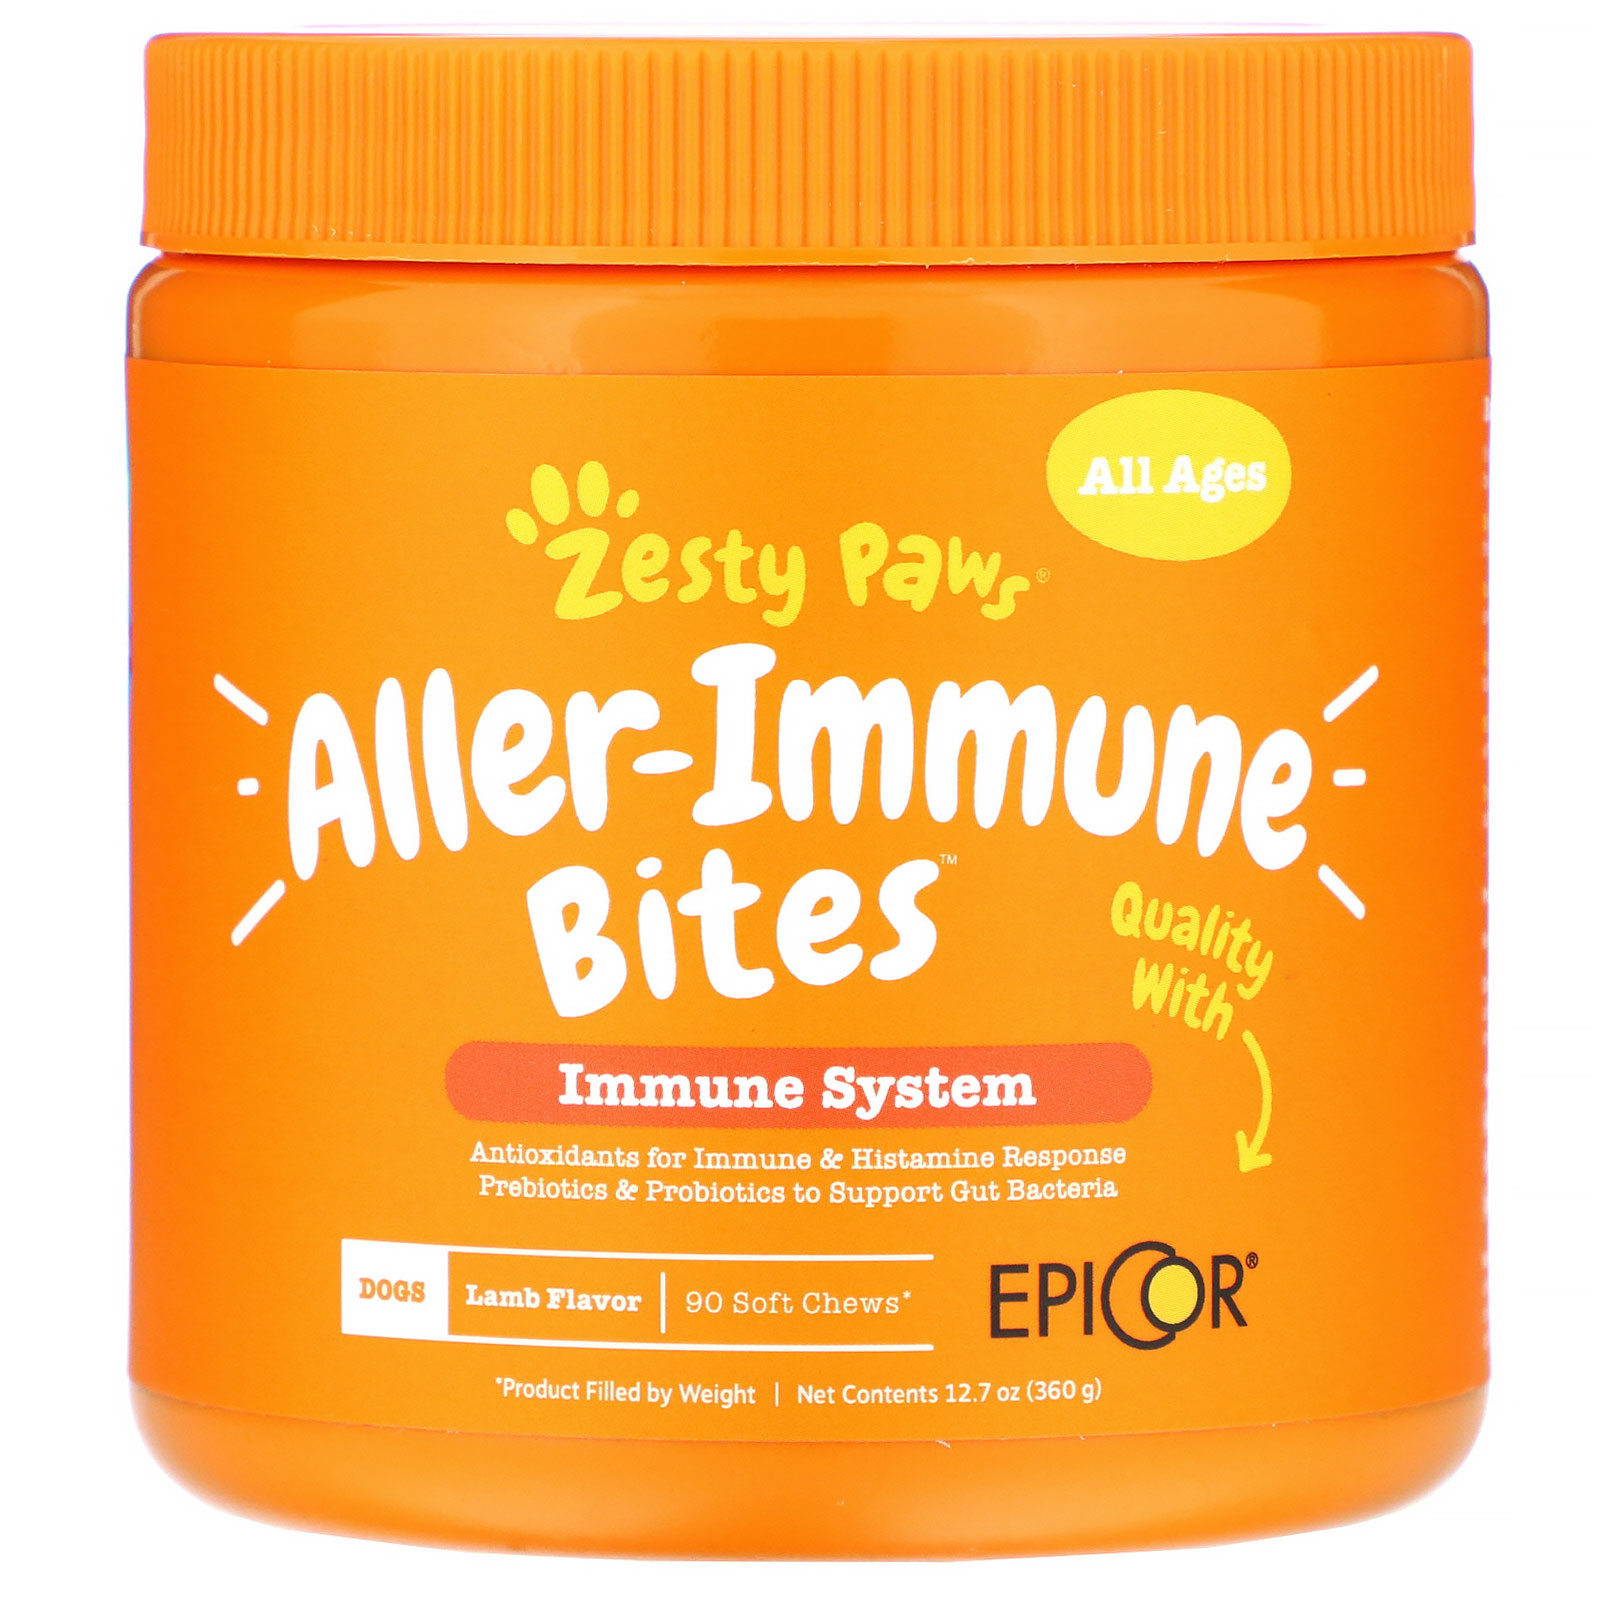 zesty paws allergy immune bites petco